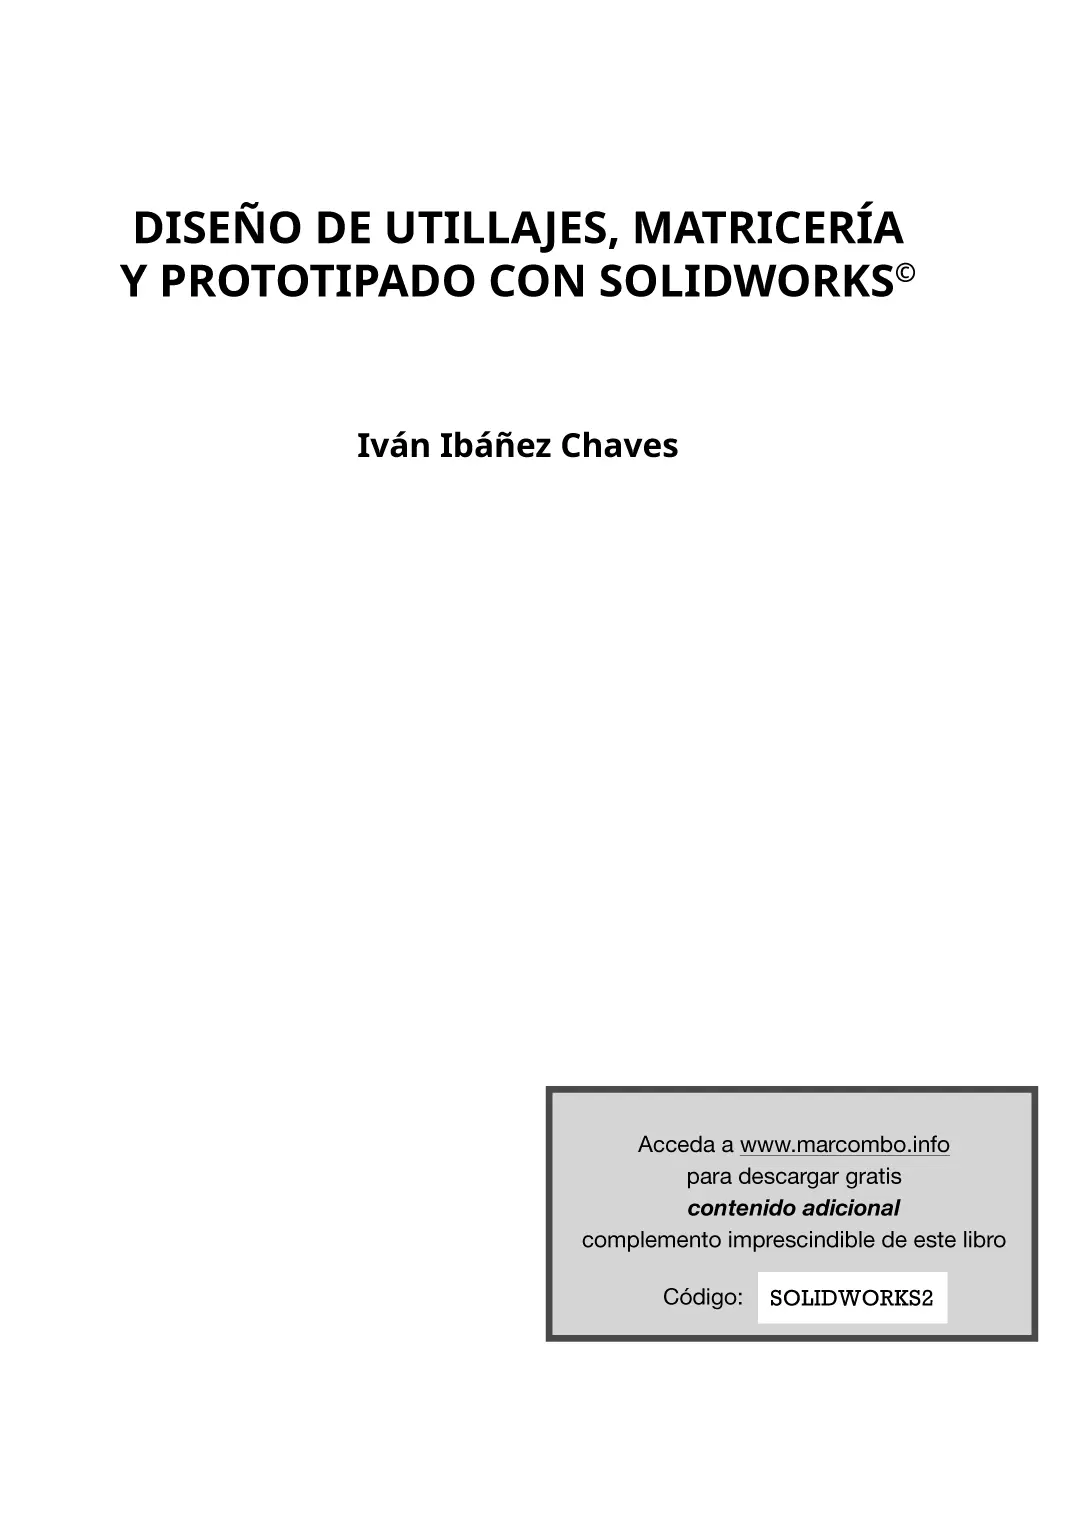 Diseño de utillajes matricería y prototipado con SolidWorks Primera - фото 1